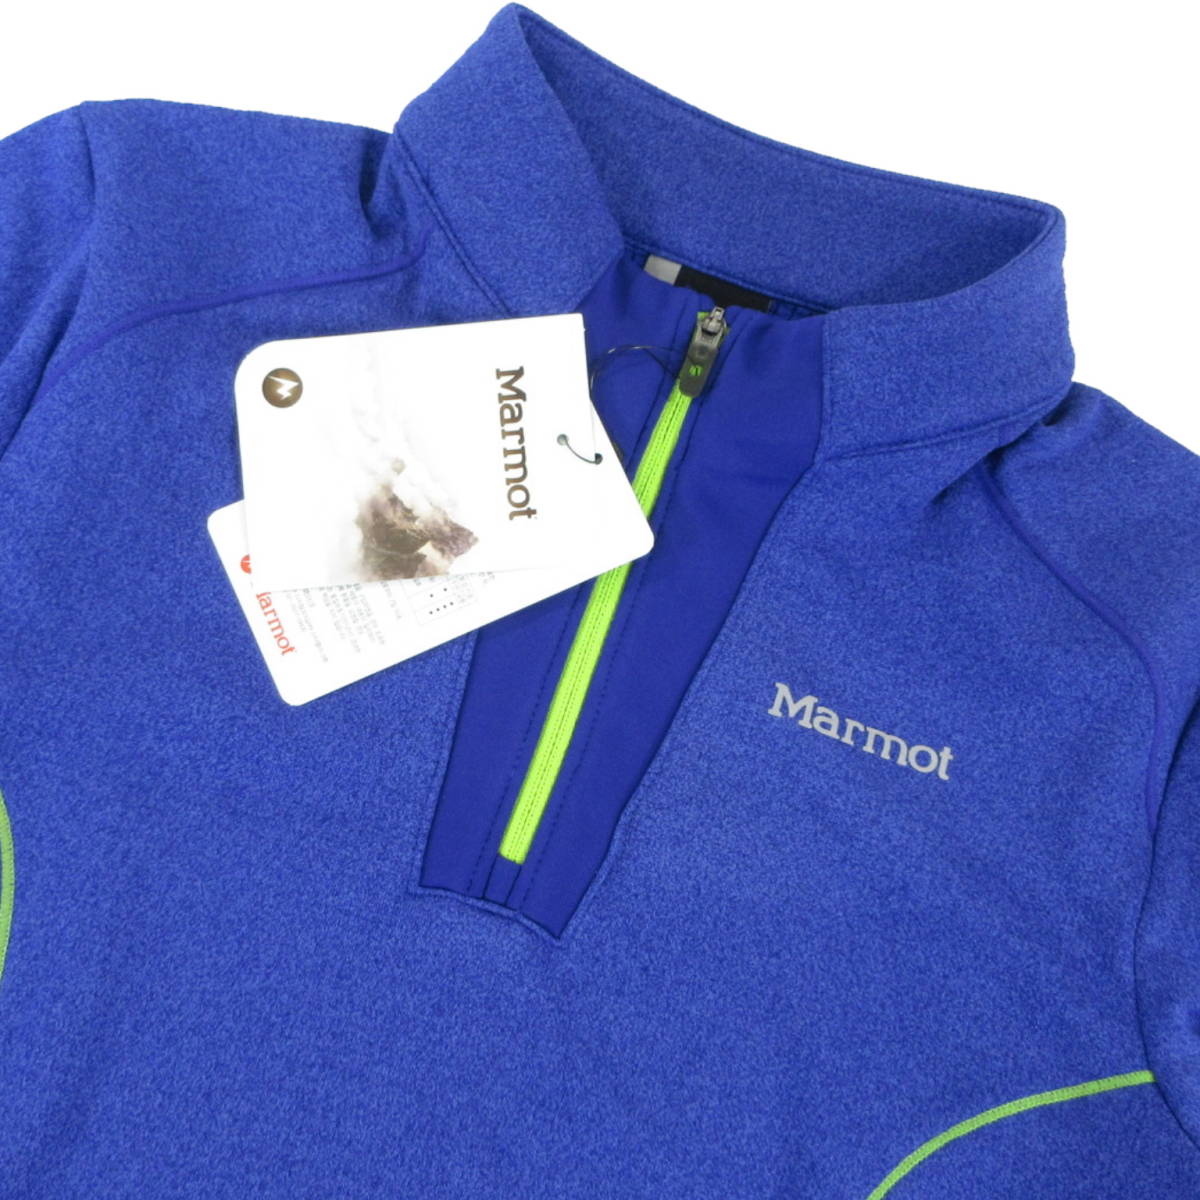  новый товар *Marmot* стрейч длинный рукав половина Zip рубашка женский S голубой * Marmot уличный обратная сторона ворсистый *J718